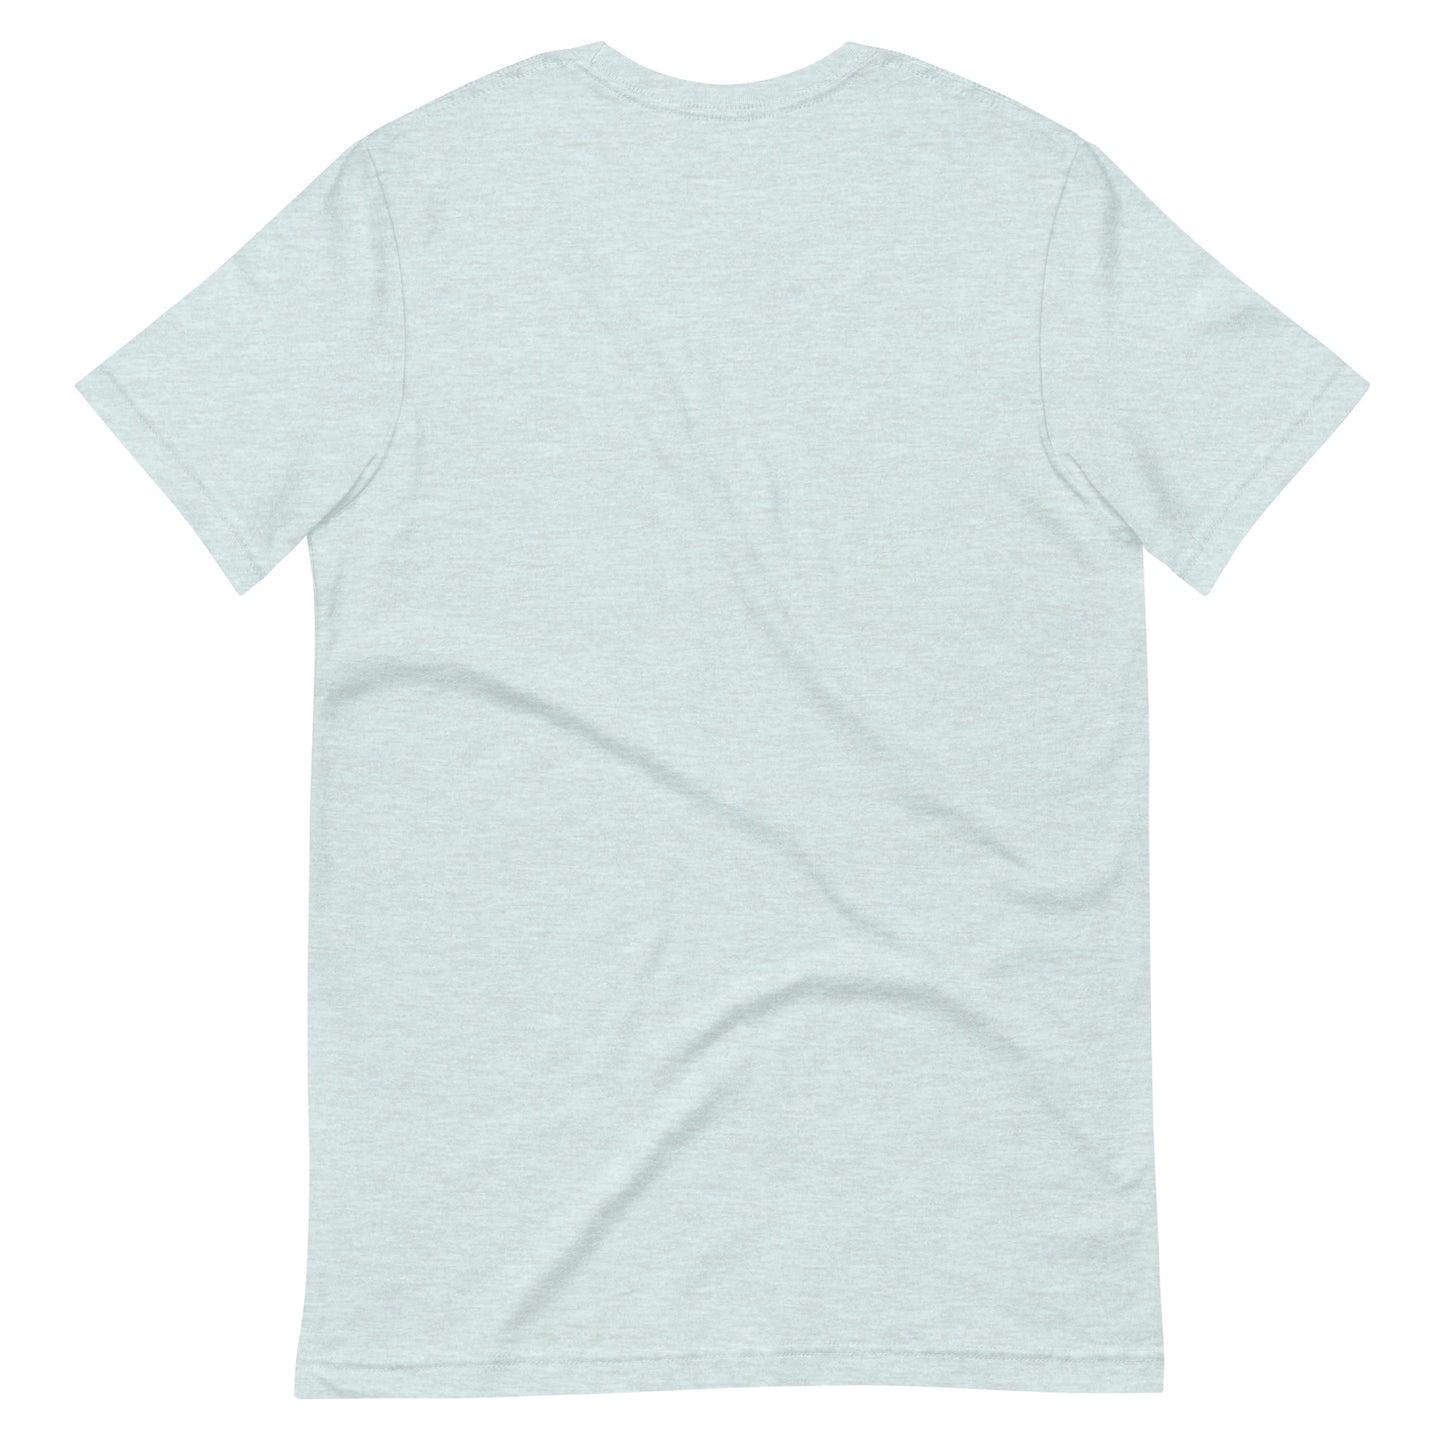 The Best Beach Bar Unisex T-Shirt